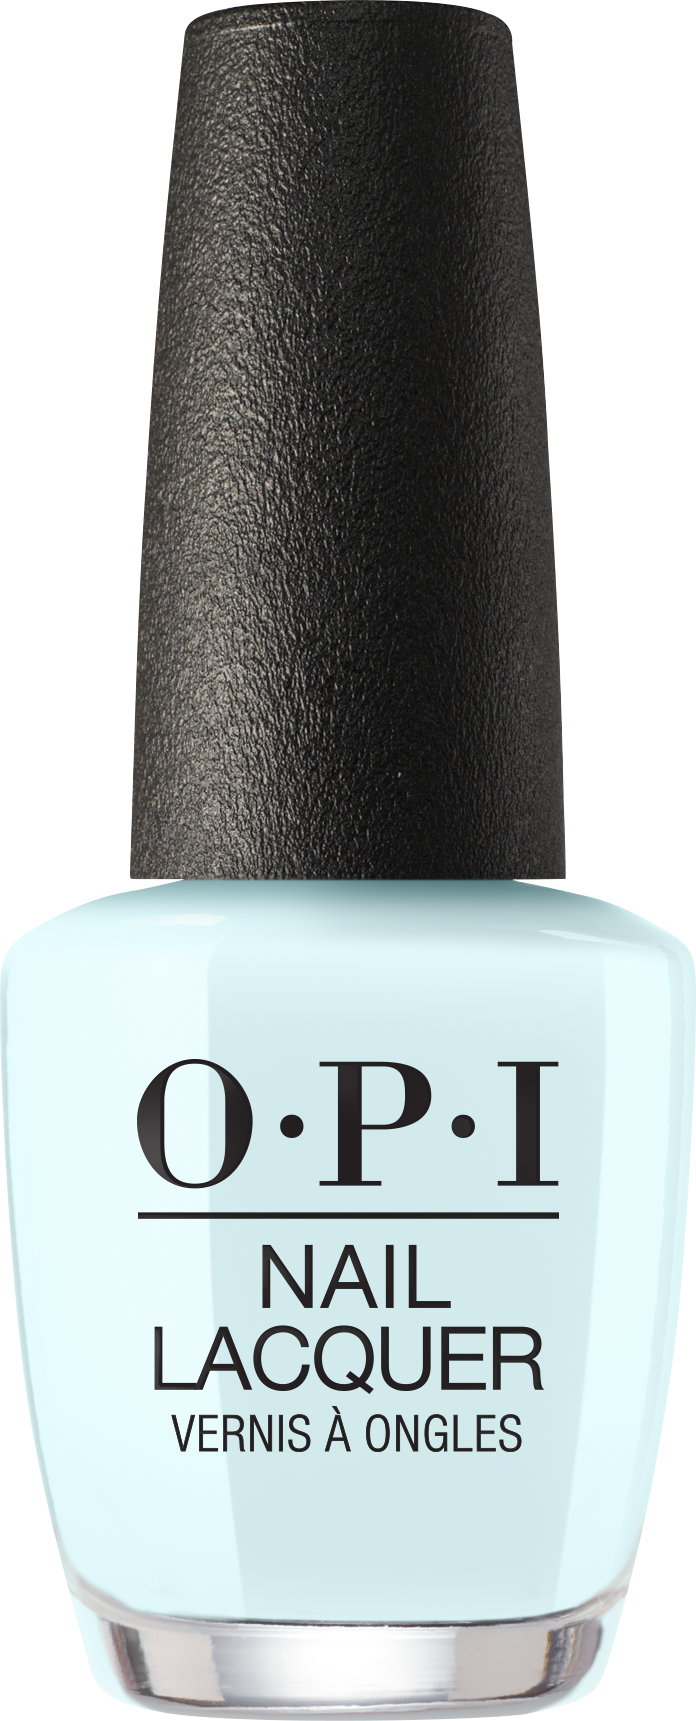 OPI Mexico City Move-Mint nail lacquer